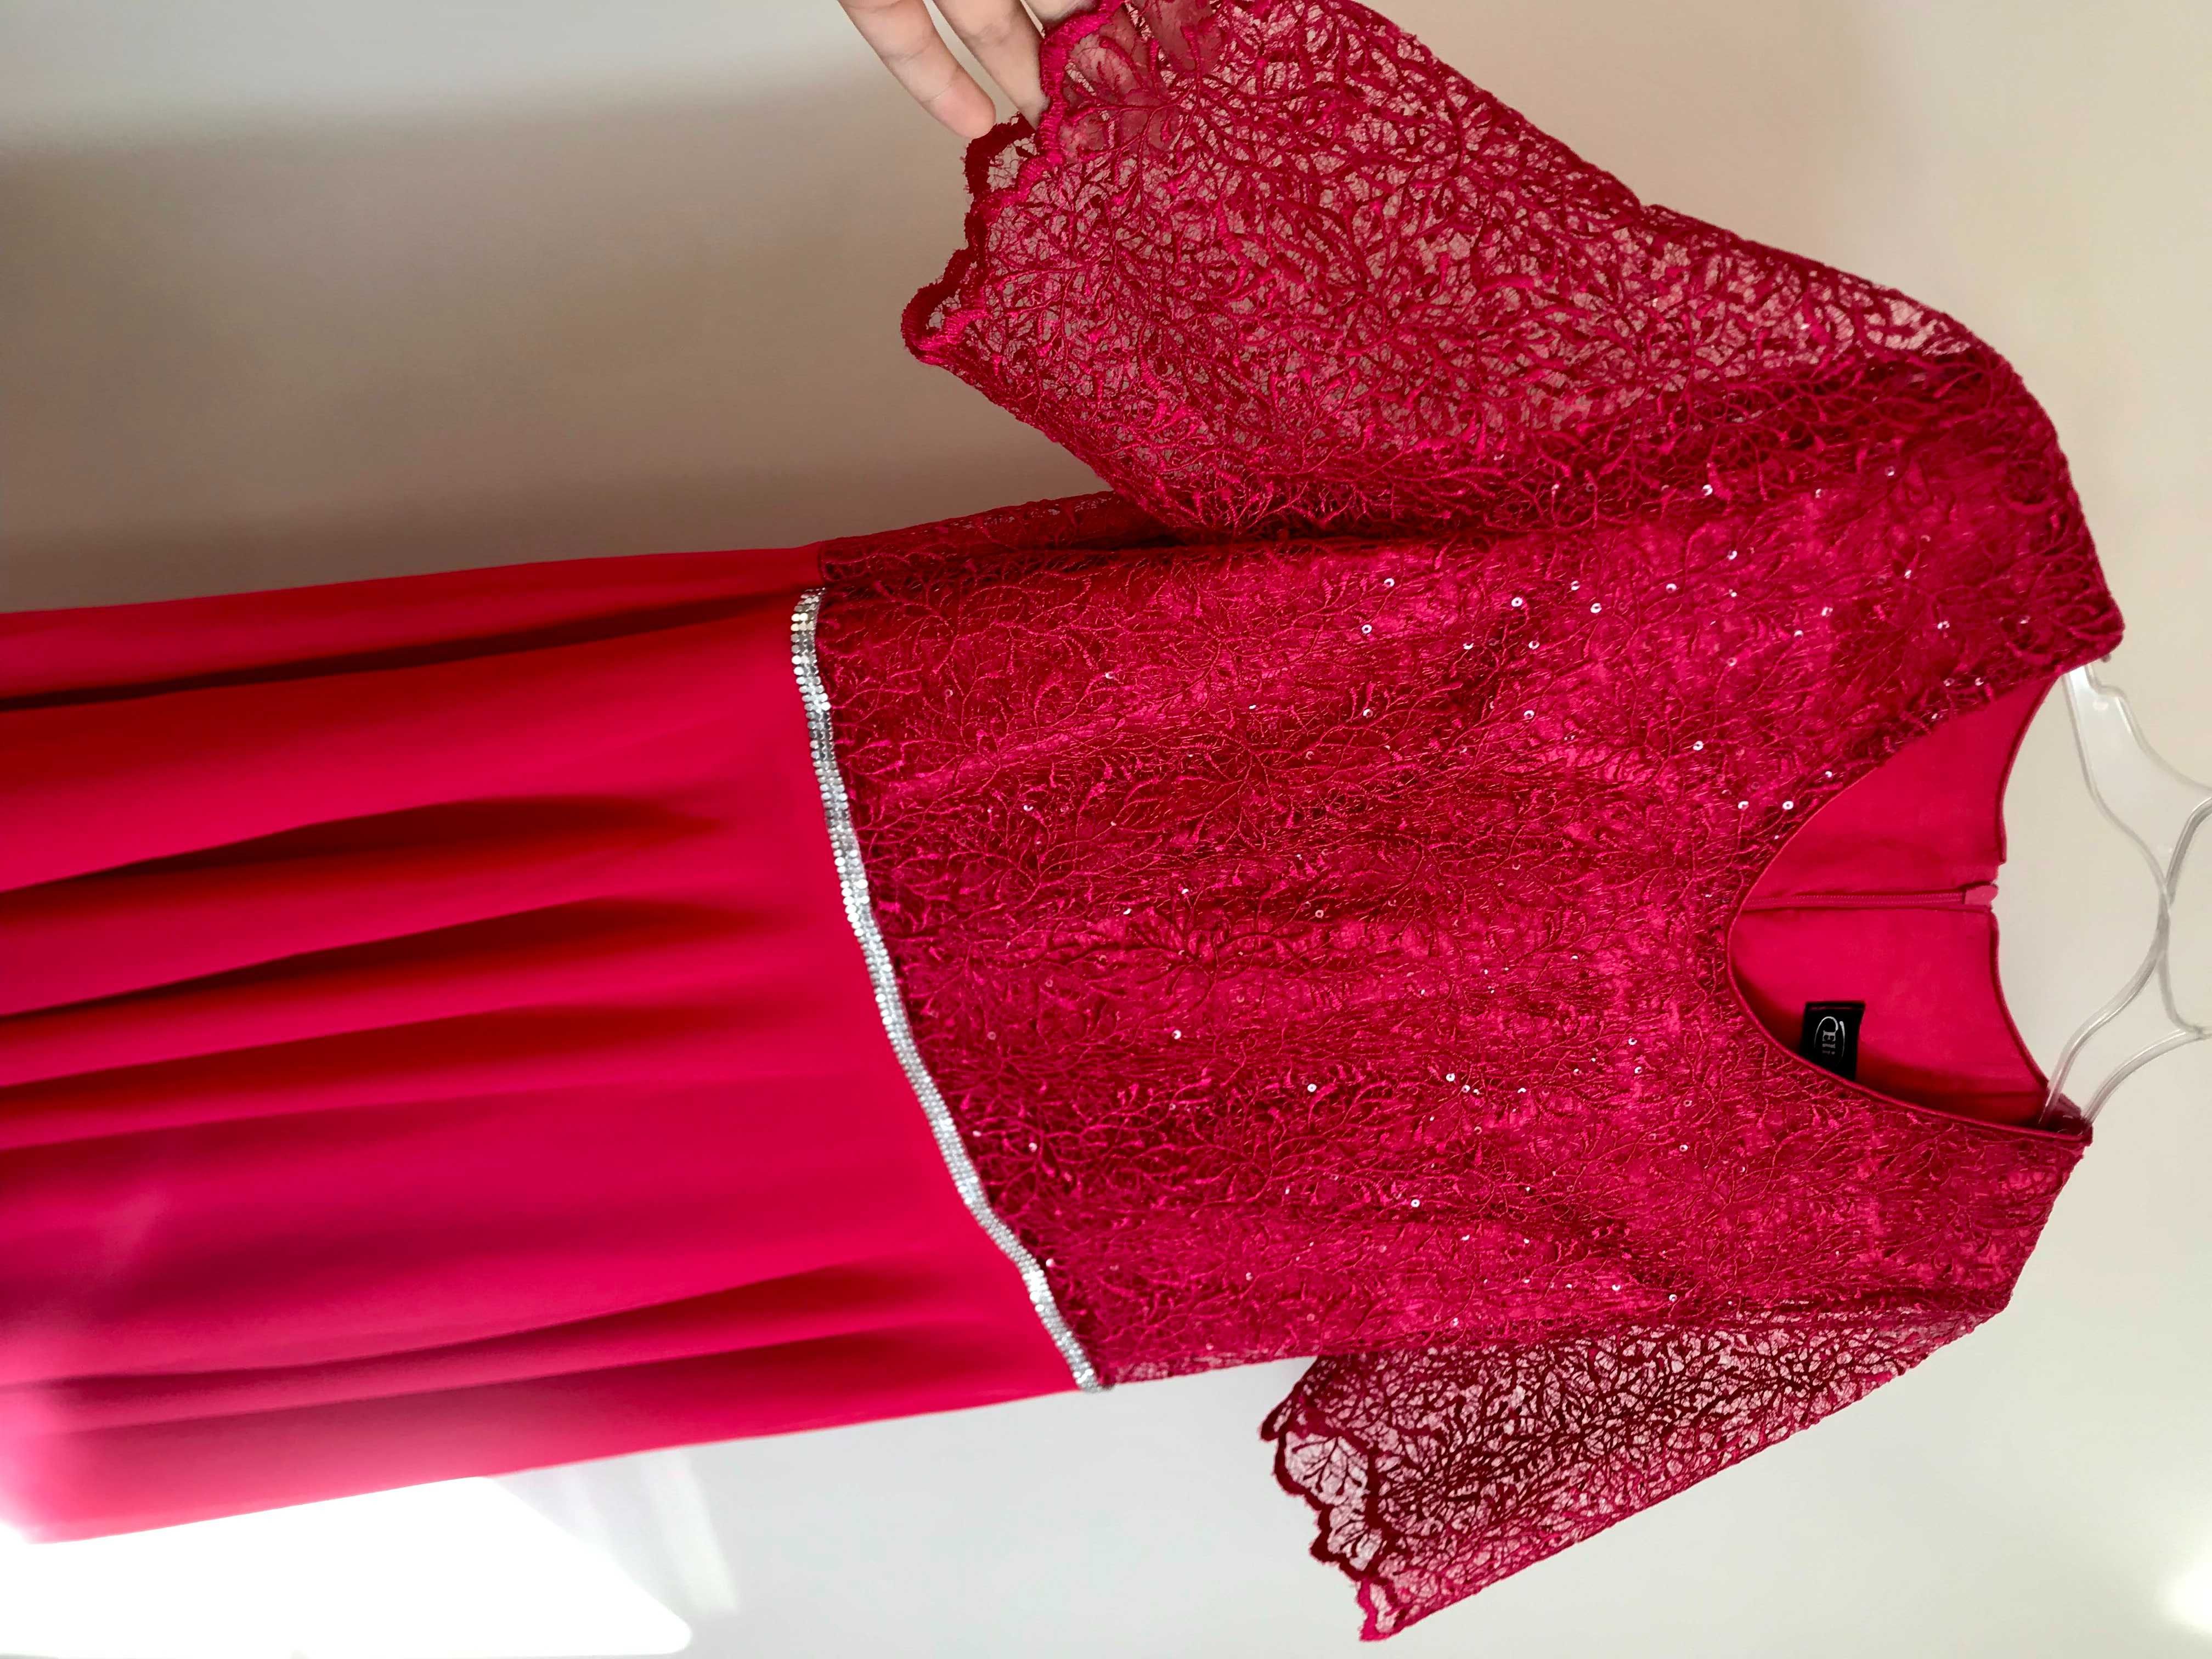 malinowa sukienka suknia na wesele sylwestra L XL 40 koronka czerwona